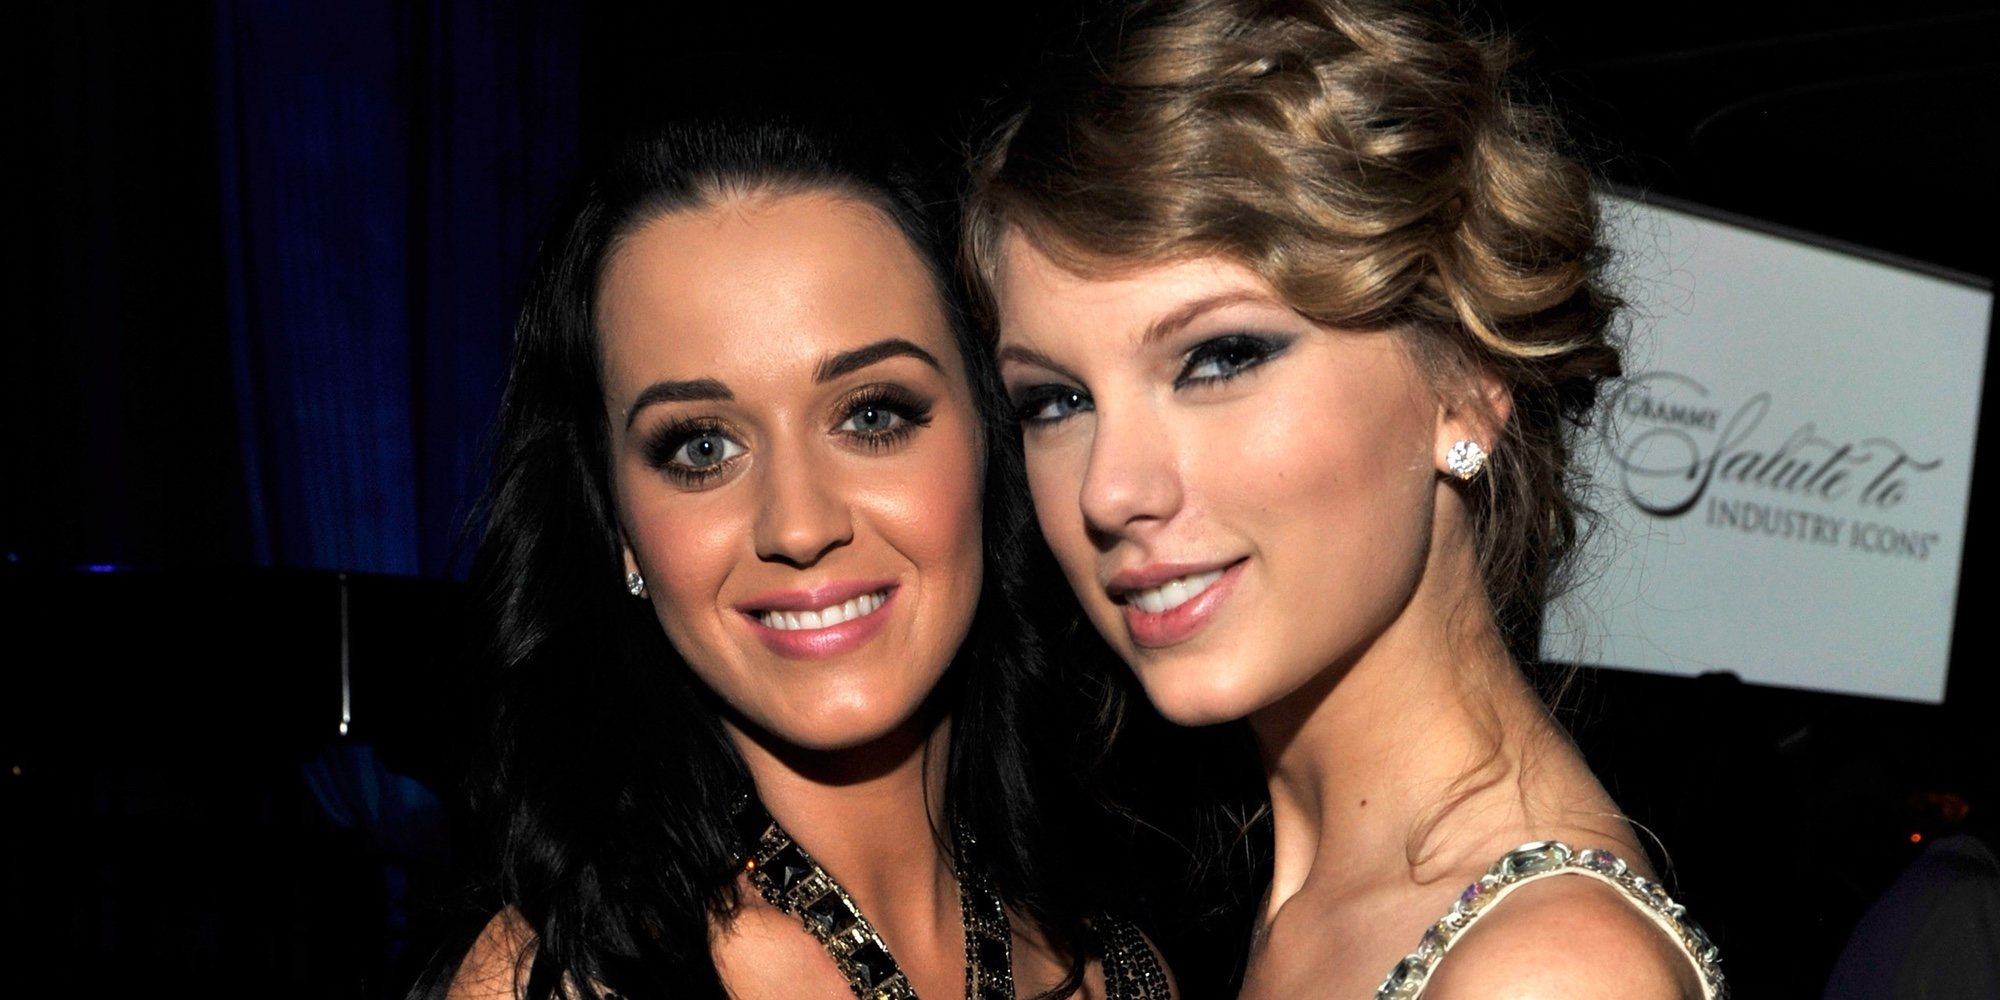 Katy Perry y Taylor Swift entierran el hacha de guerra con unas galletitas de la paz